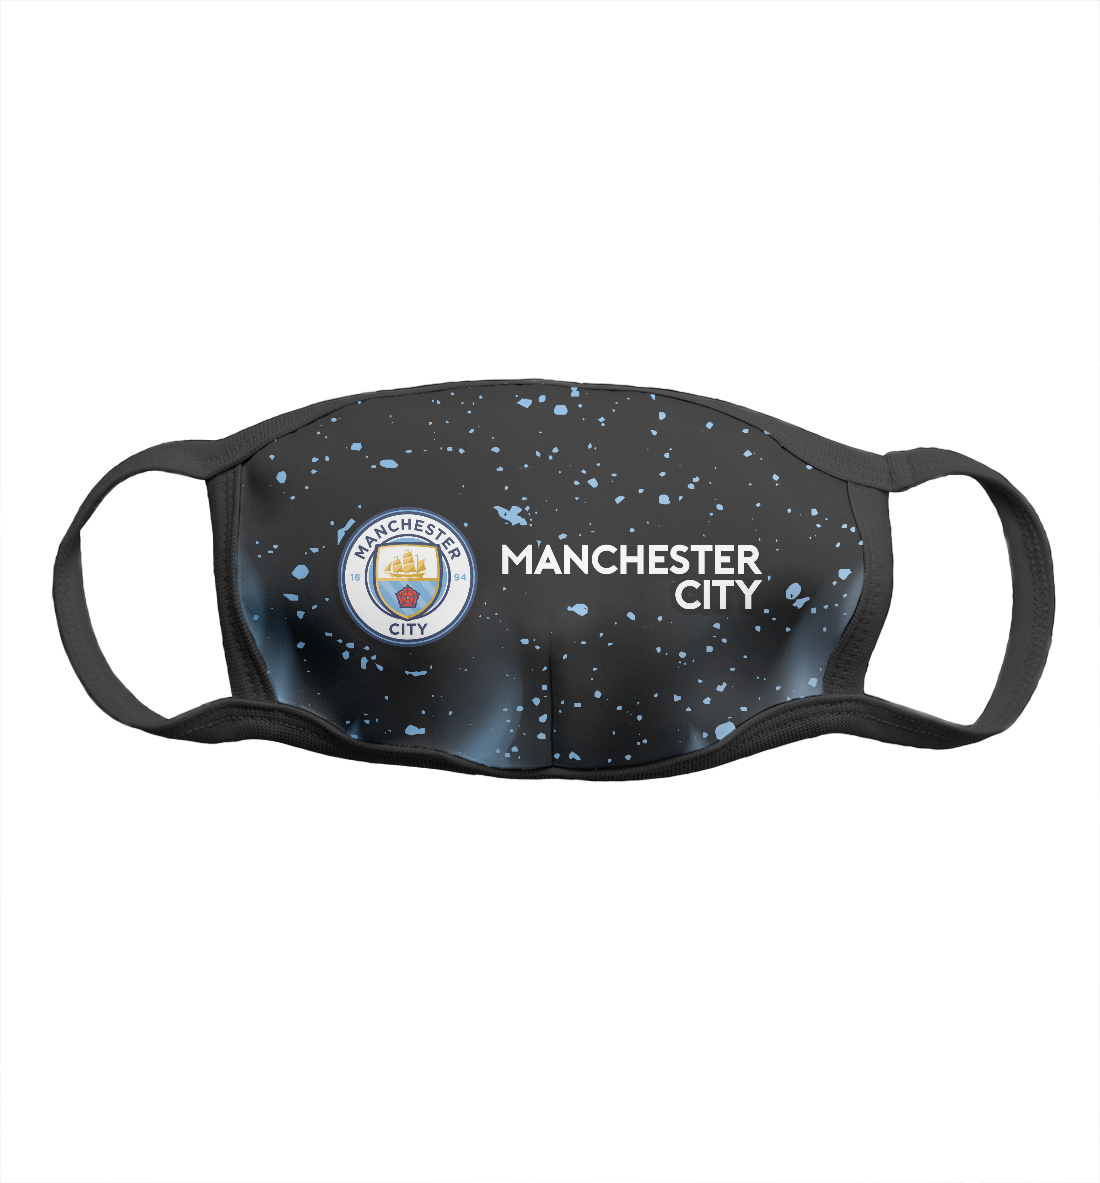 Детская Маска Manchester City / Манчестер Сити для девочек, артикул MNC-517850-msk-1mp